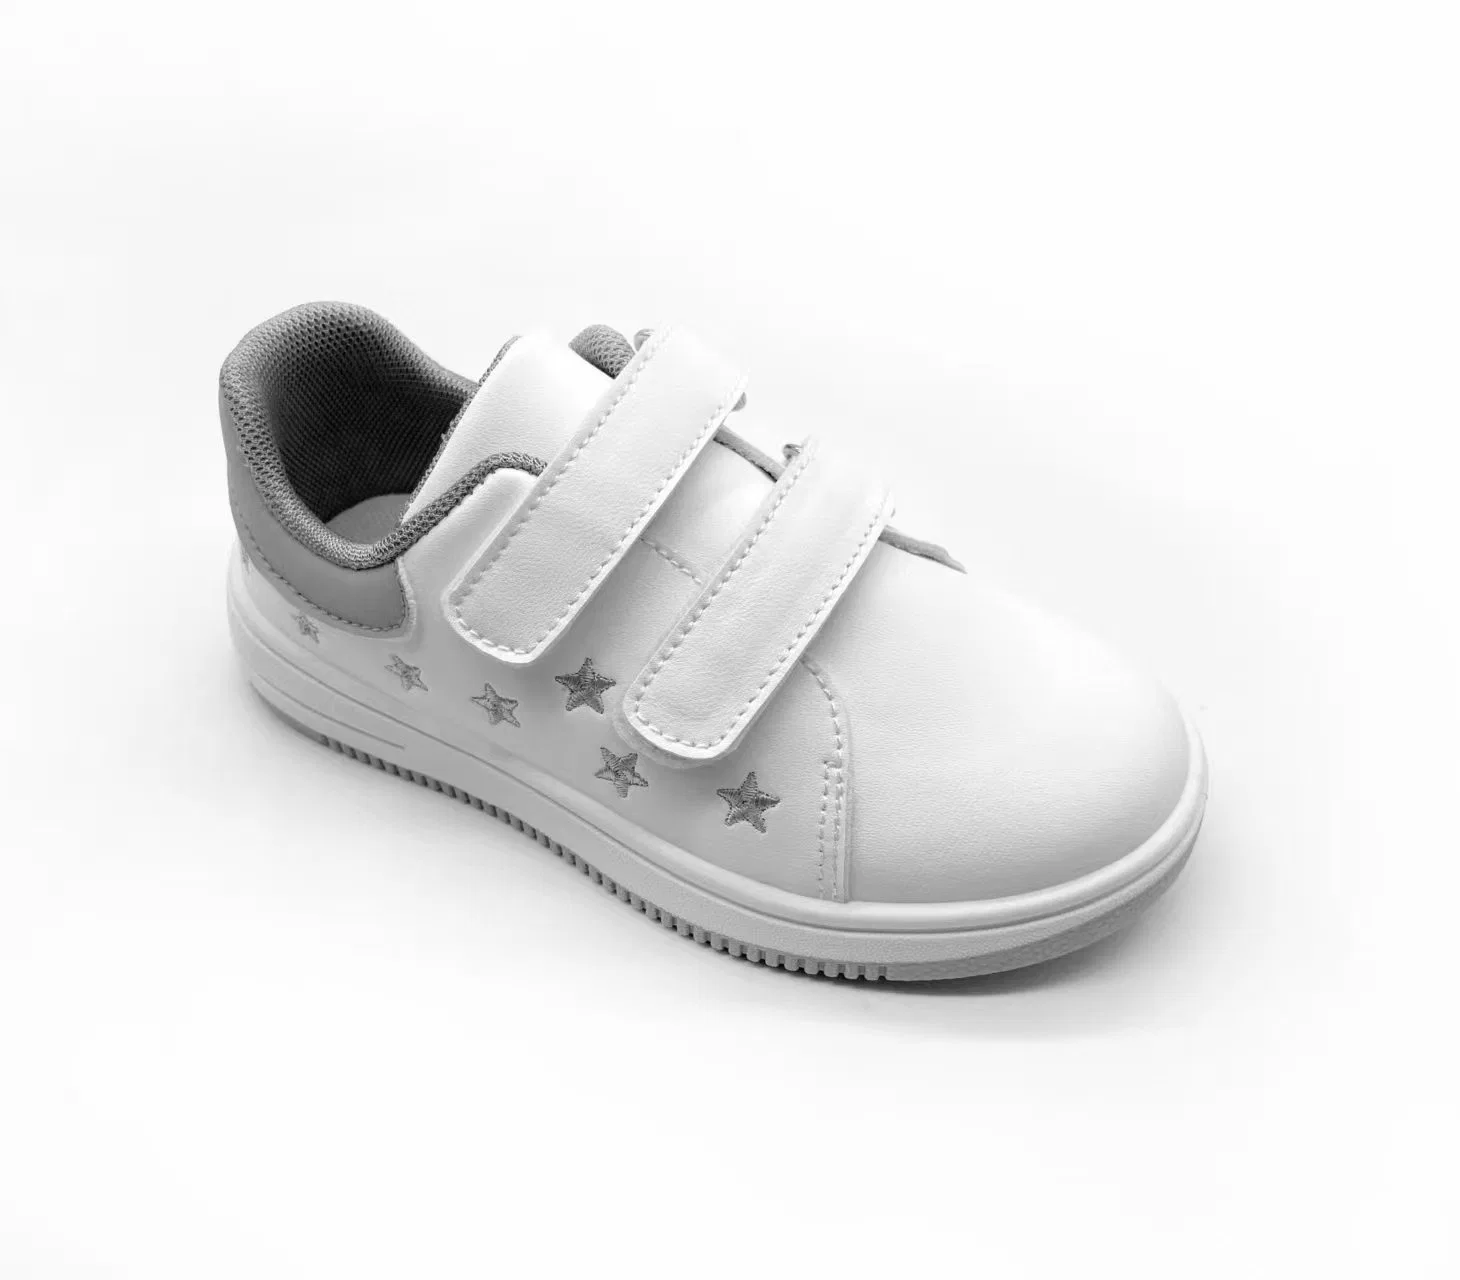 Wholesale Toddler Boy Girl Shoes Factory OEM Kid Sneaker PU Casual Footwear